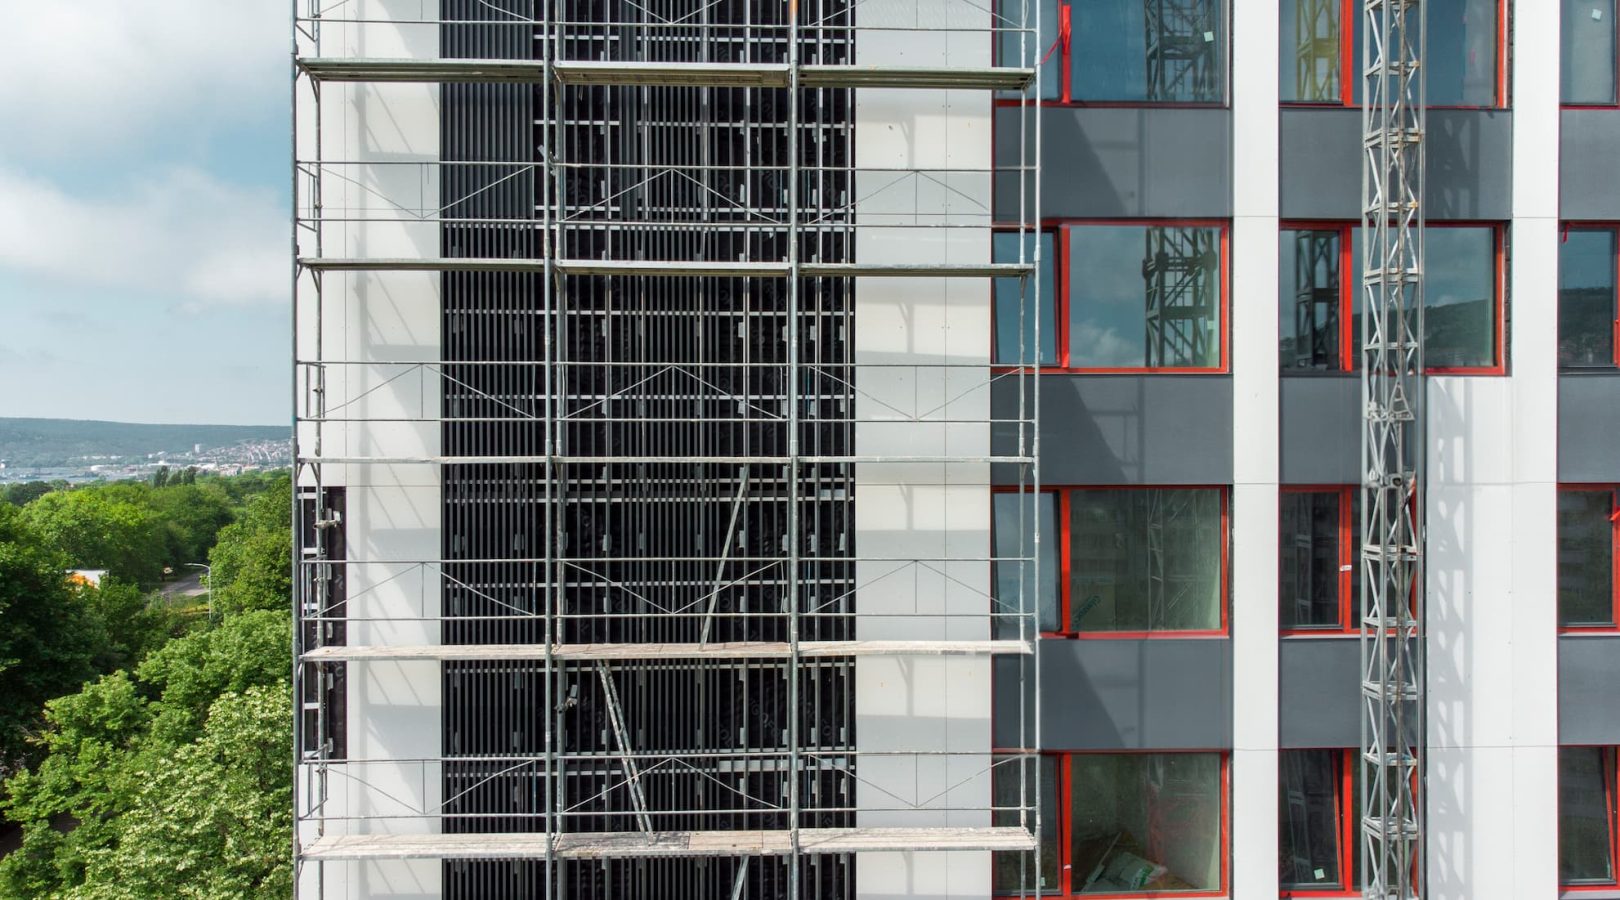 scaffolding-on-apartment-building-facade-construct-2023-11-27-05-33-25-utc (1)